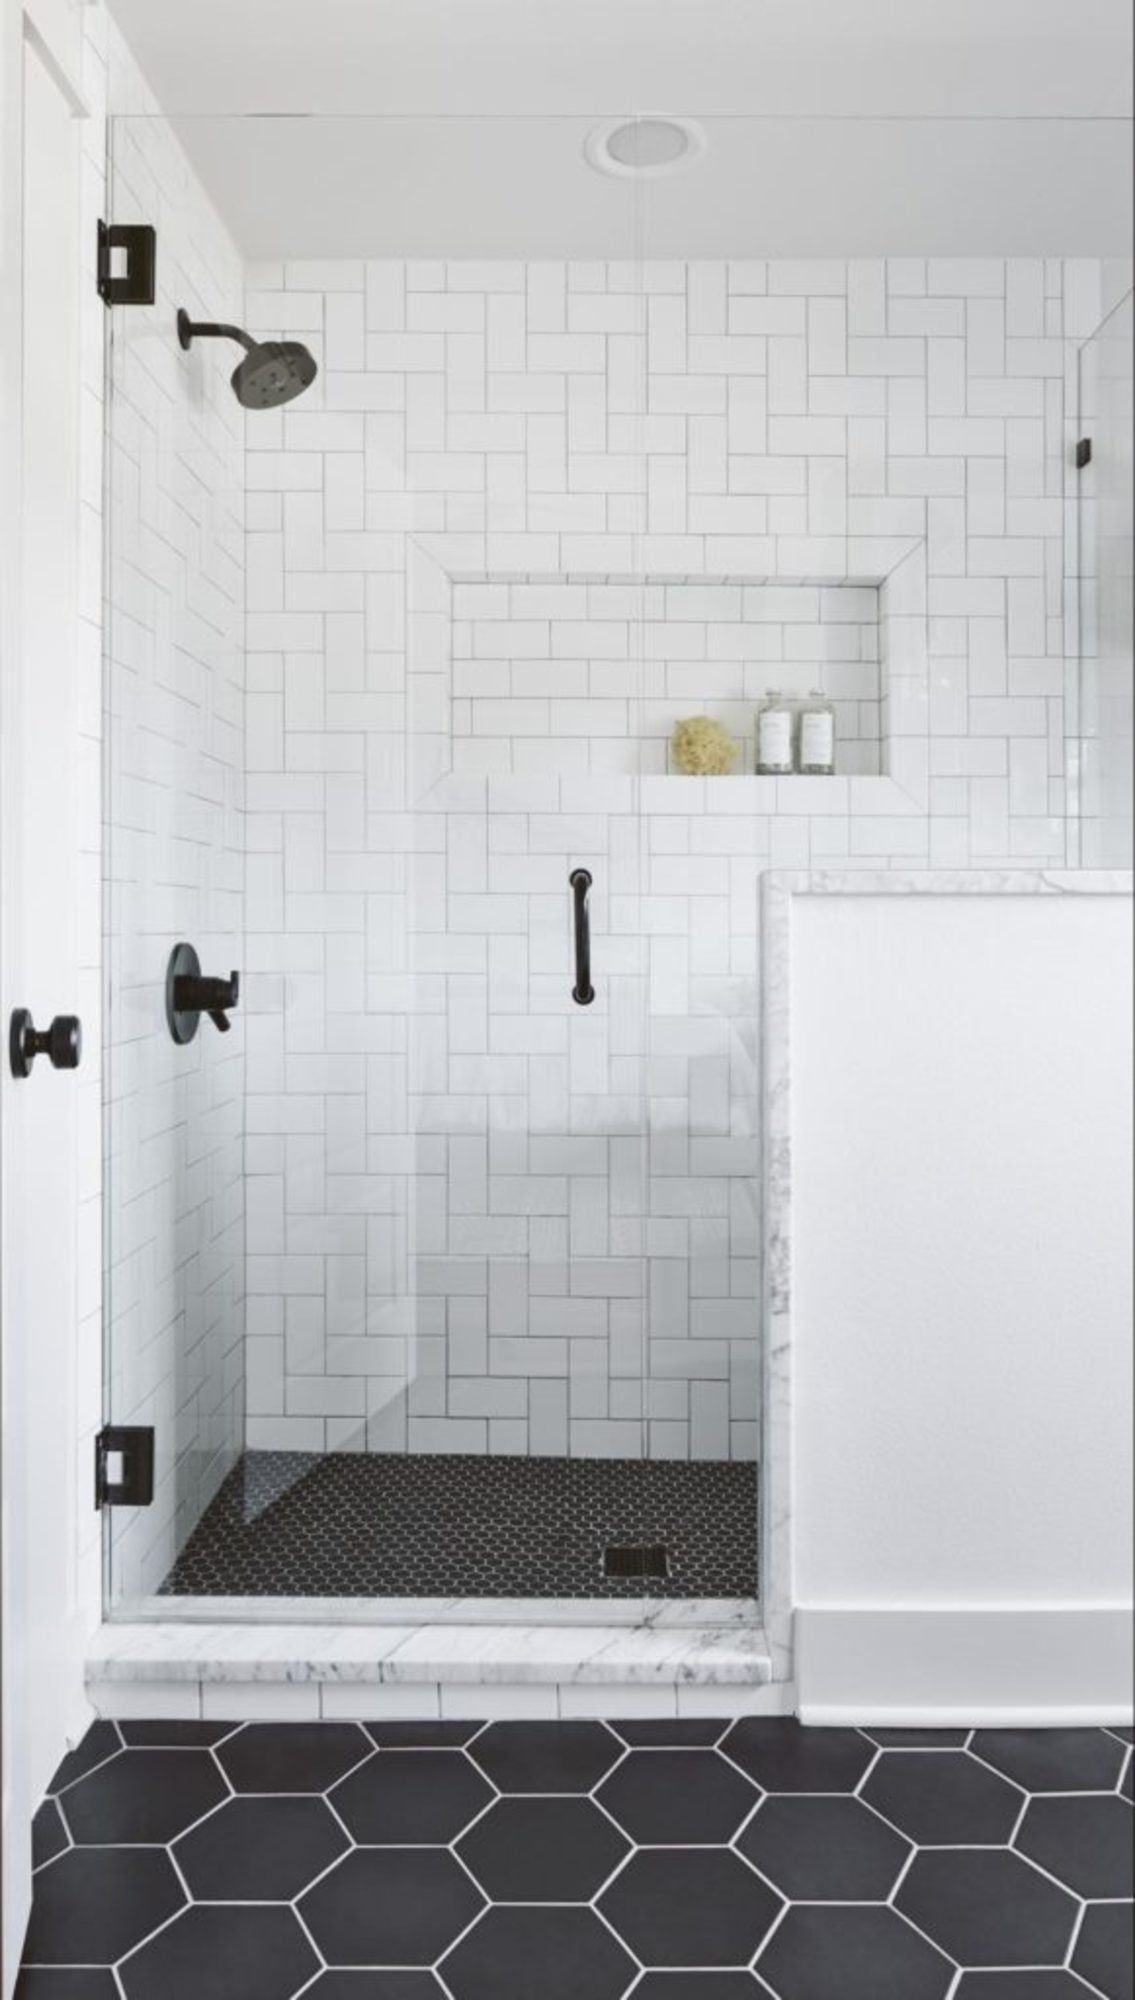 Large Format Tile, Large Shower Tile & Tile Flooring